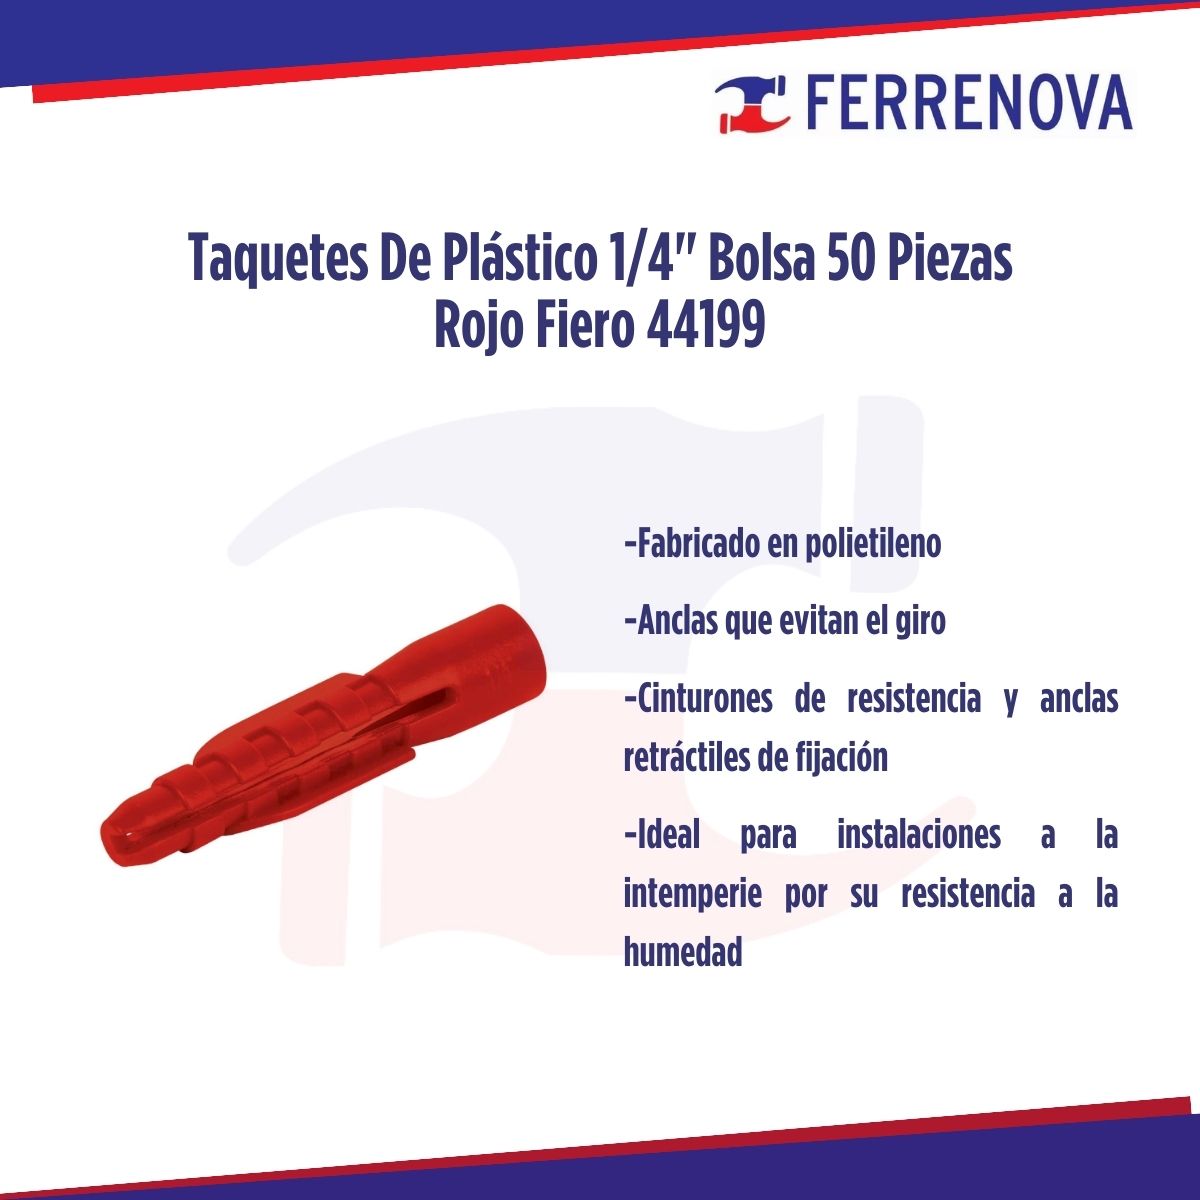 Taquetes De Plástico 1/4" Bolsa 50 Piezas Rojo Fiero 44199